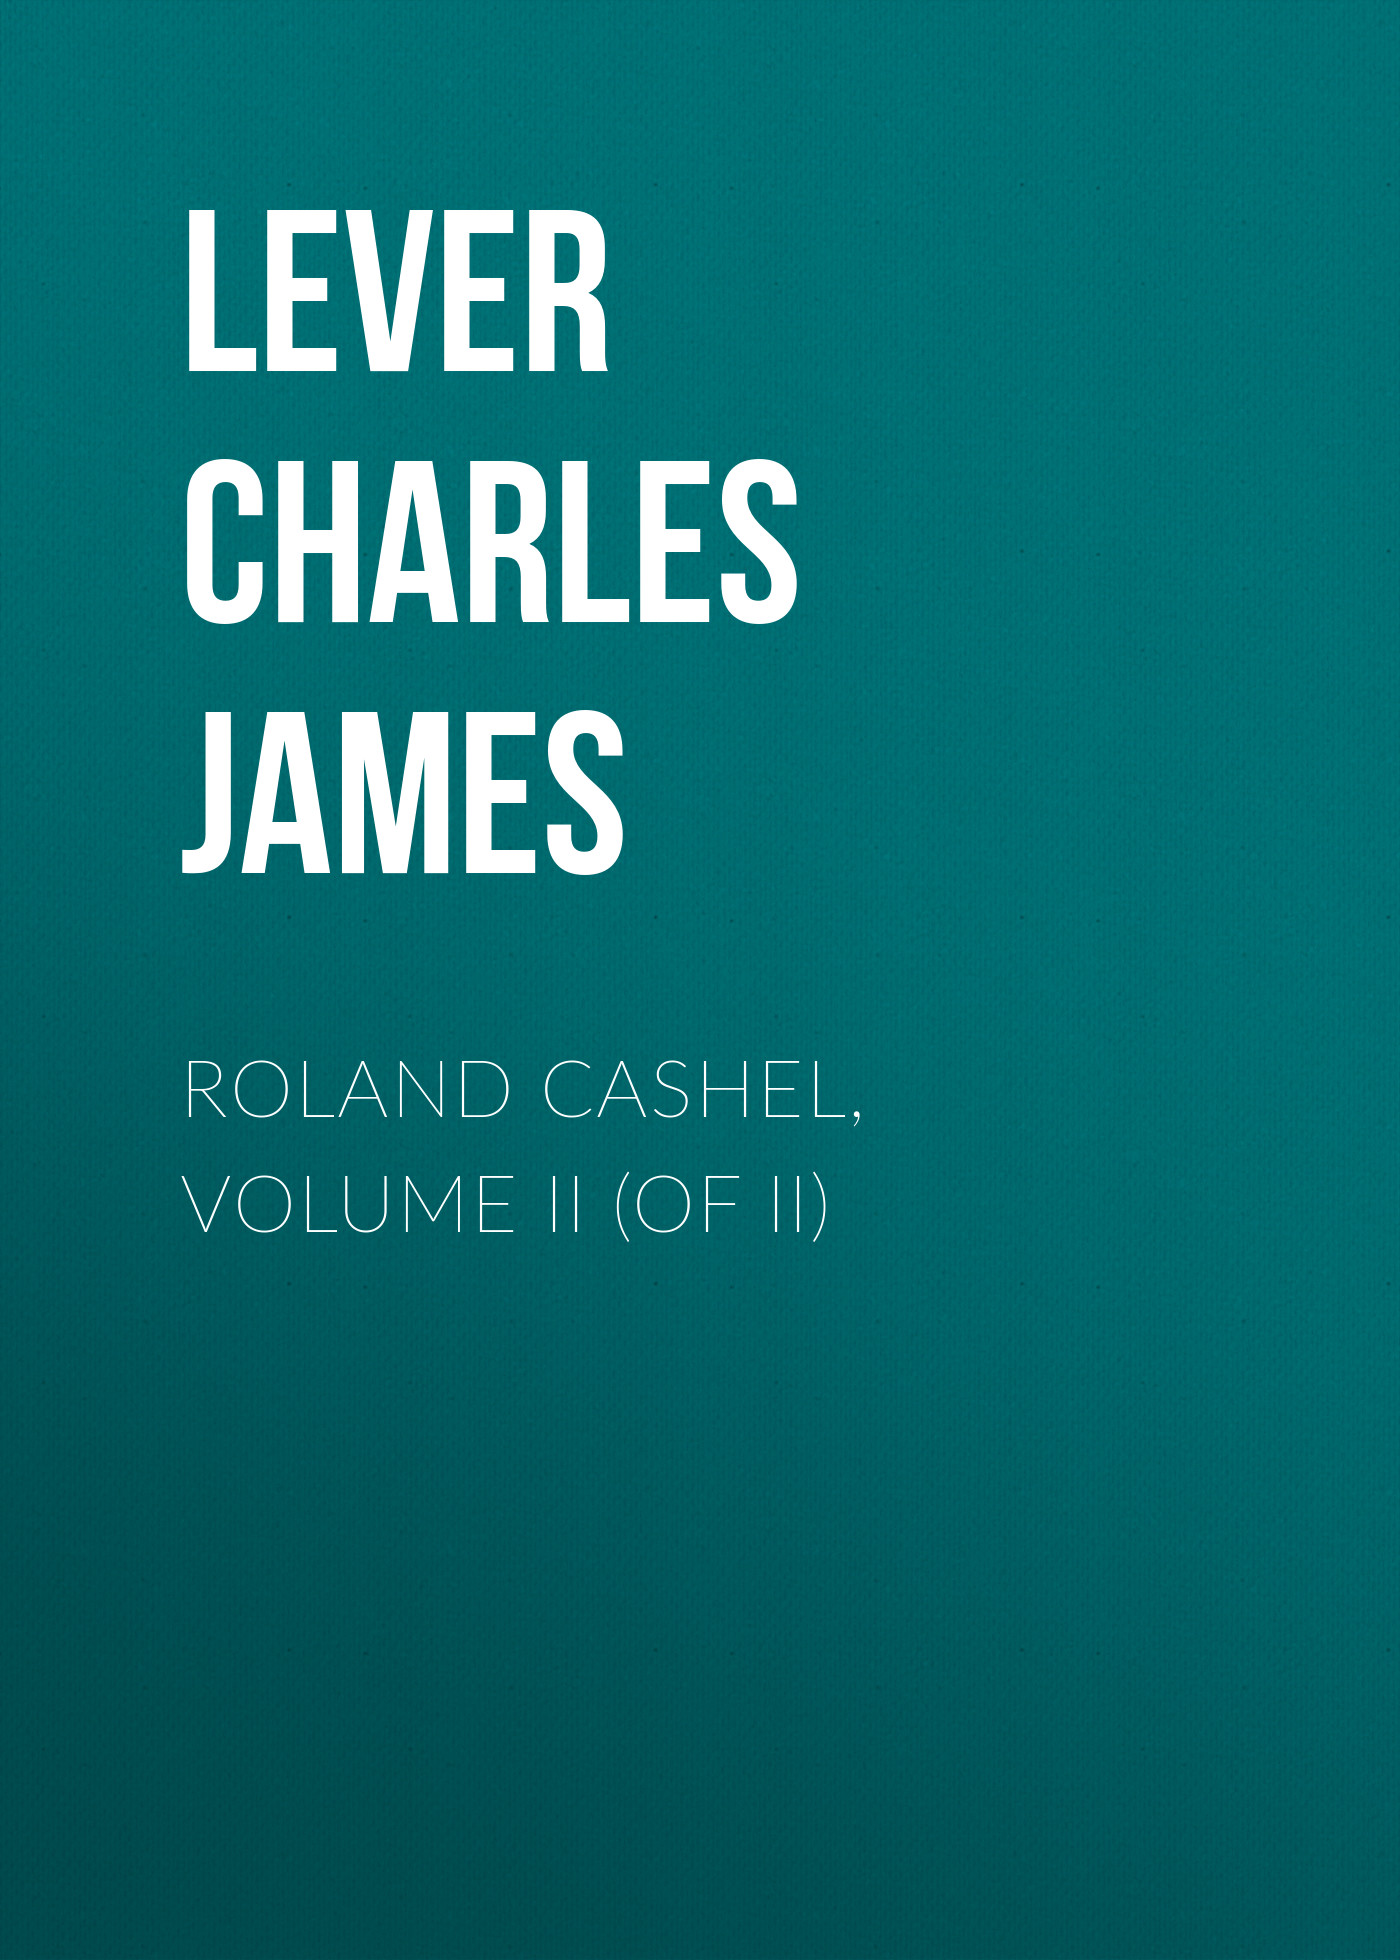 Книга Roland Cashel, Volume II (of II) из серии , созданная Charles Lever, может относится к жанру Литература 19 века, Зарубежная старинная литература, Зарубежная классика. Стоимость электронной книги Roland Cashel, Volume II (of II) с идентификатором 25451180 составляет 0 руб.